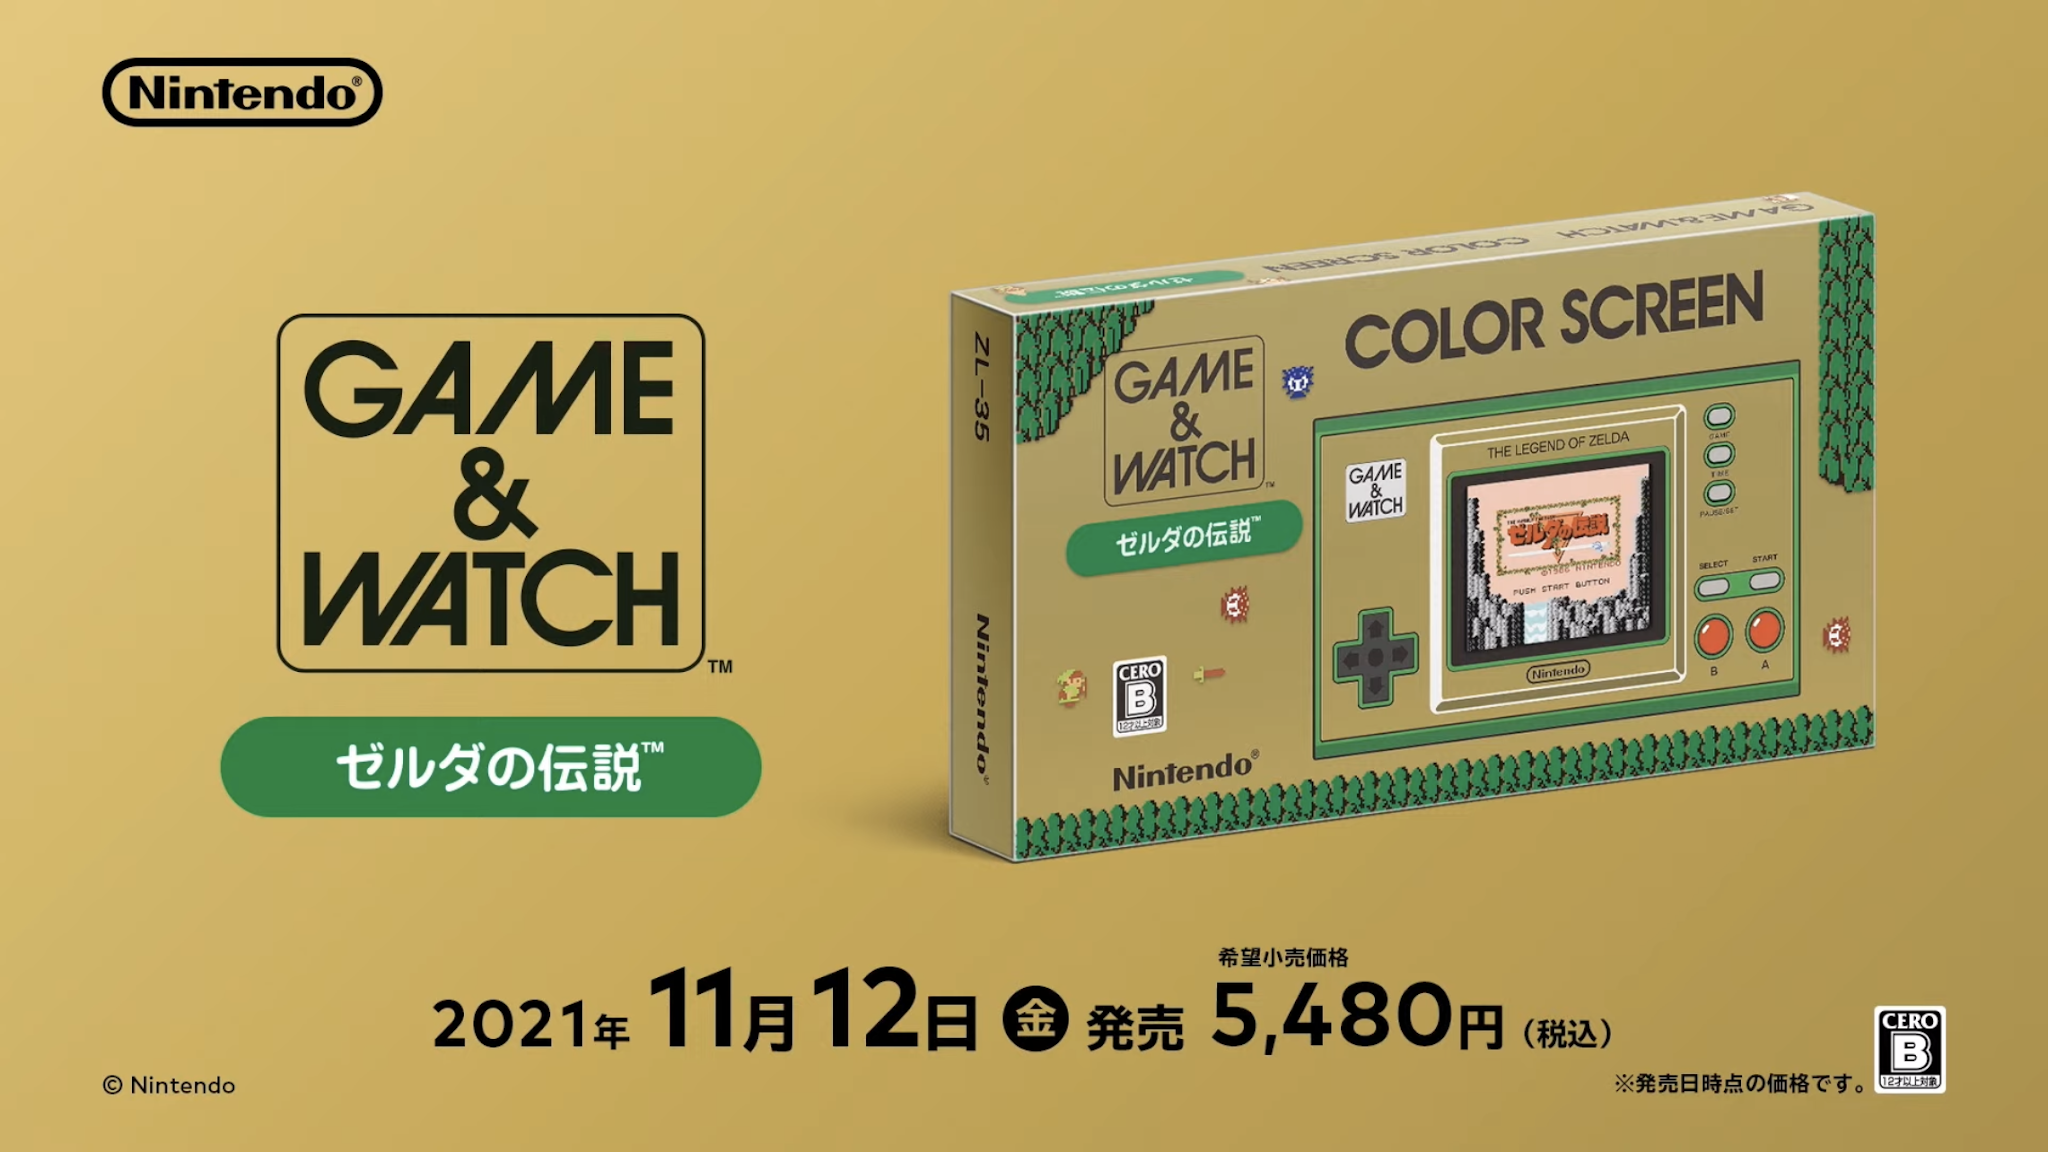 Zelda Game & Watch Set to Release in November